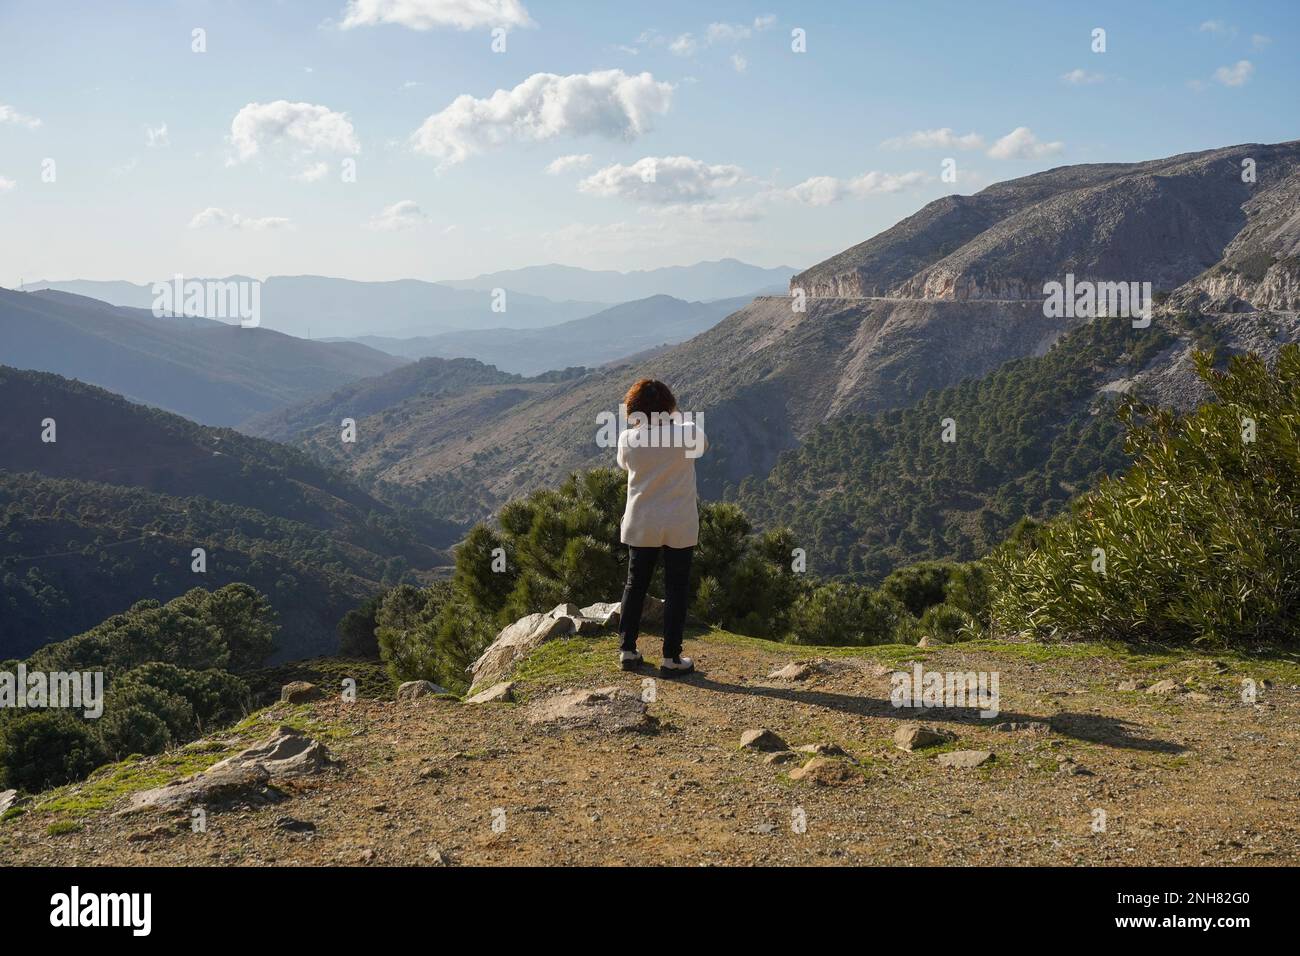 Femme faisant la photo avec mobile, dans la région de montagne Serrania de ronda, Espagne. Banque D'Images